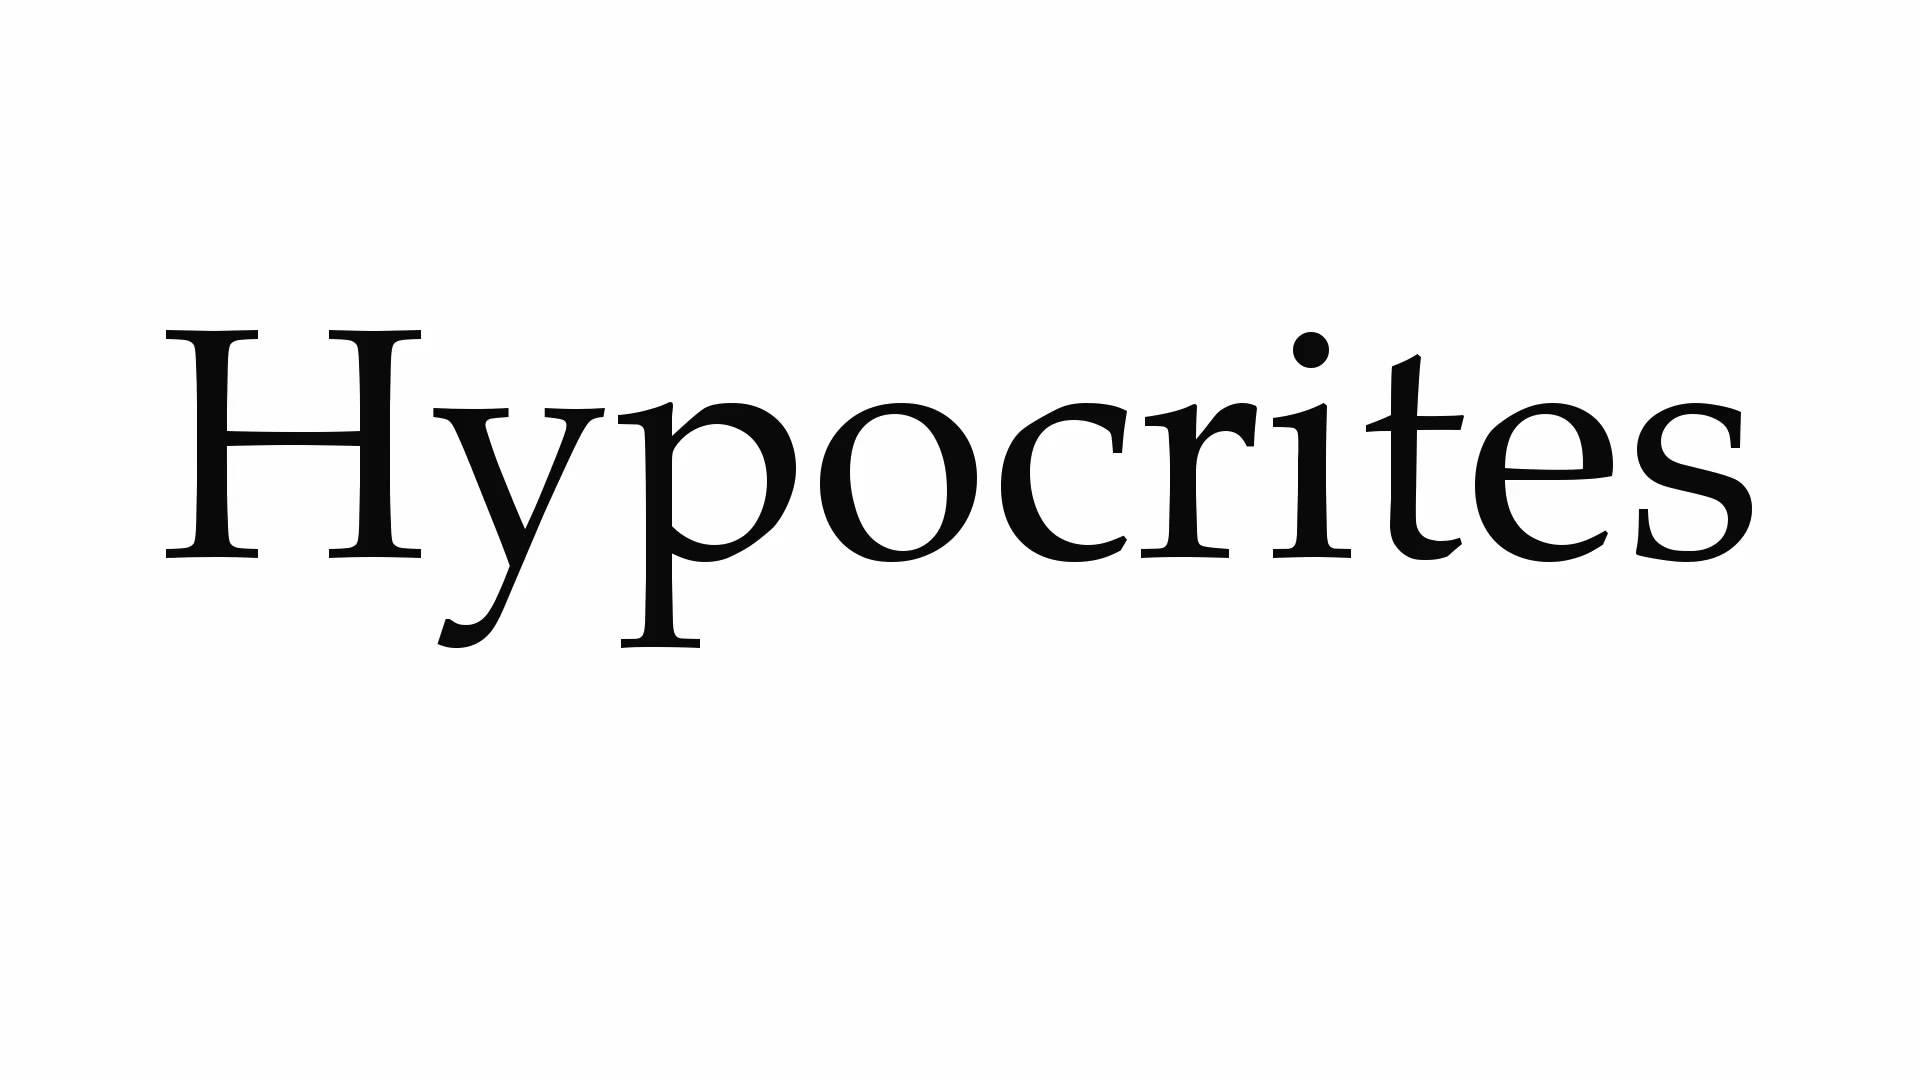 Hypocrites! - Restore